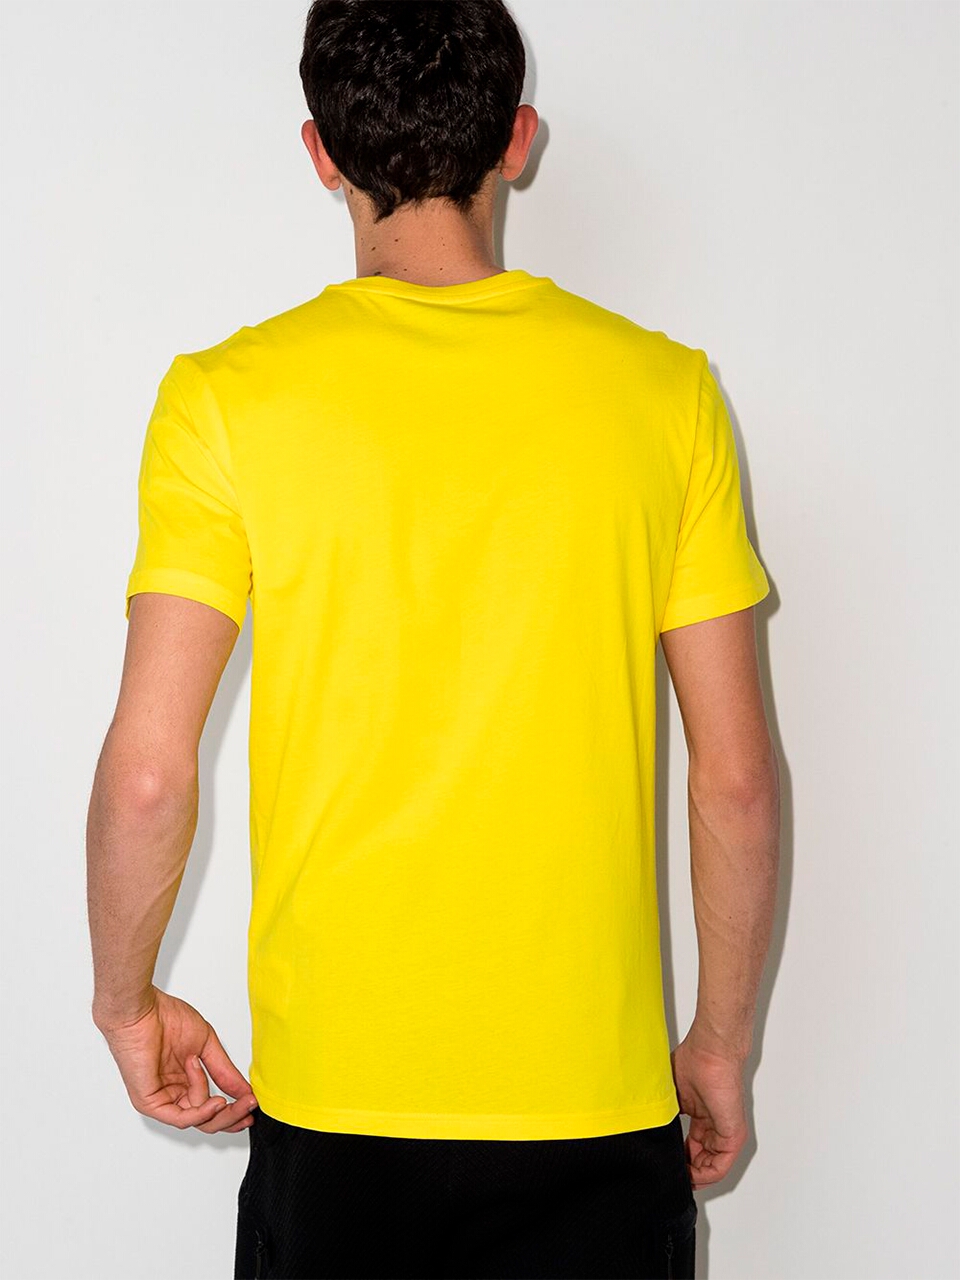 Imagem de: Camiseta Moschino Amarela com Logo Preto